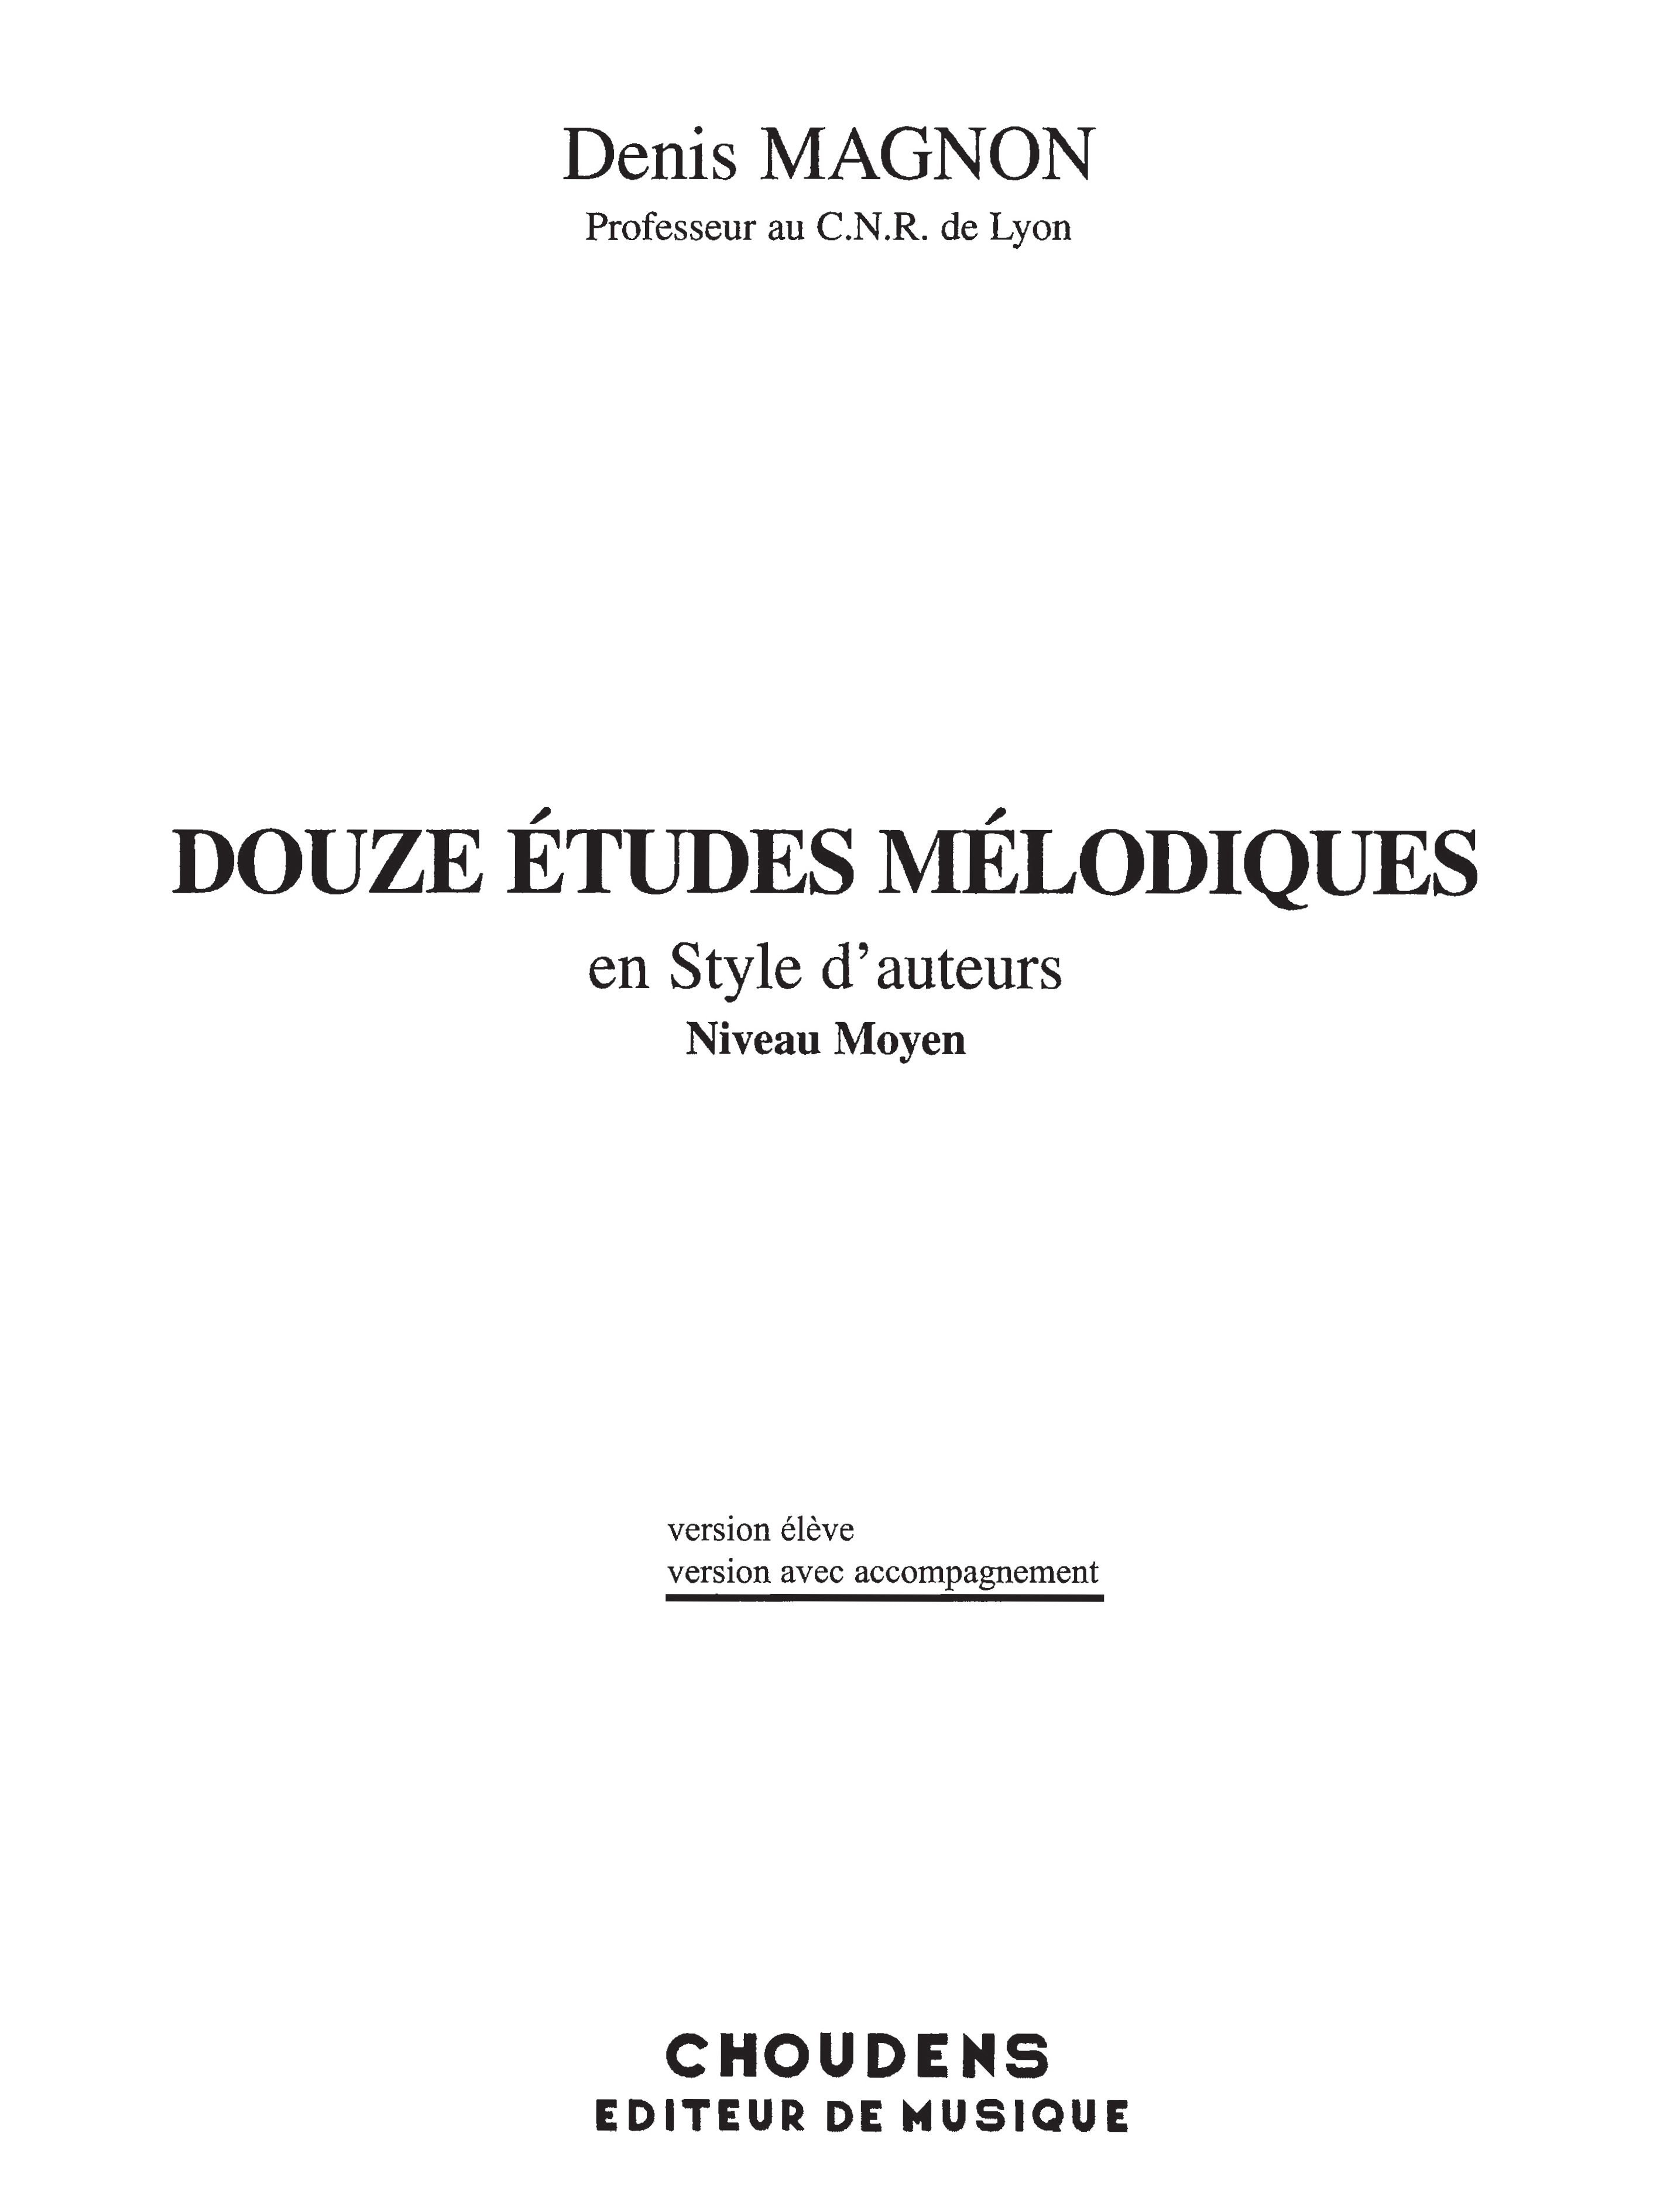 Denis Magnon: Douze Etudes Melodiques en Style d'Auteurs: Voice: Vocal Album